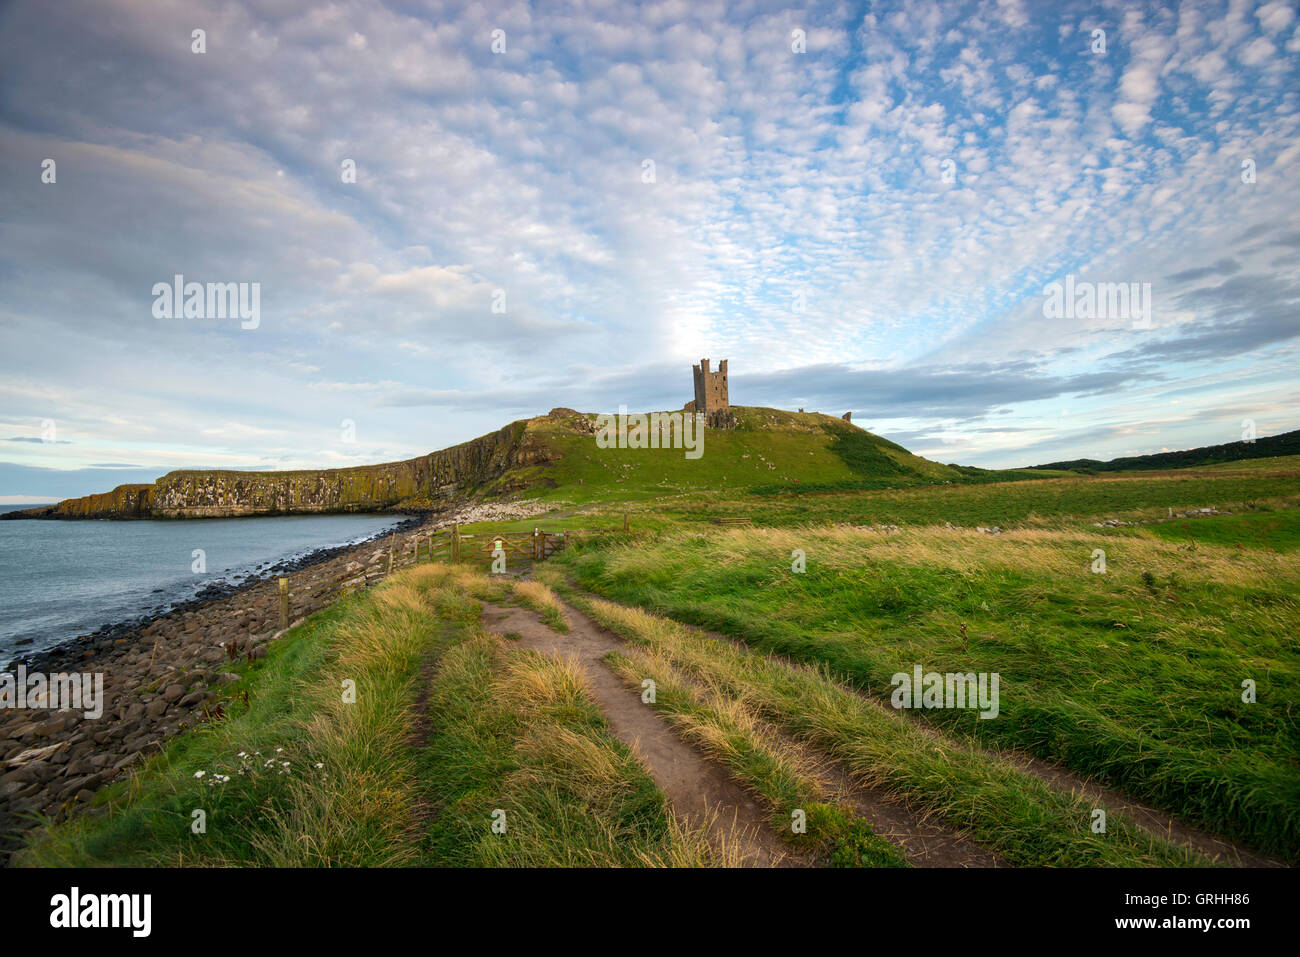 Les ruines de château de Dunstanburgh, sur la côte de Northumberland, England UK Banque D'Images